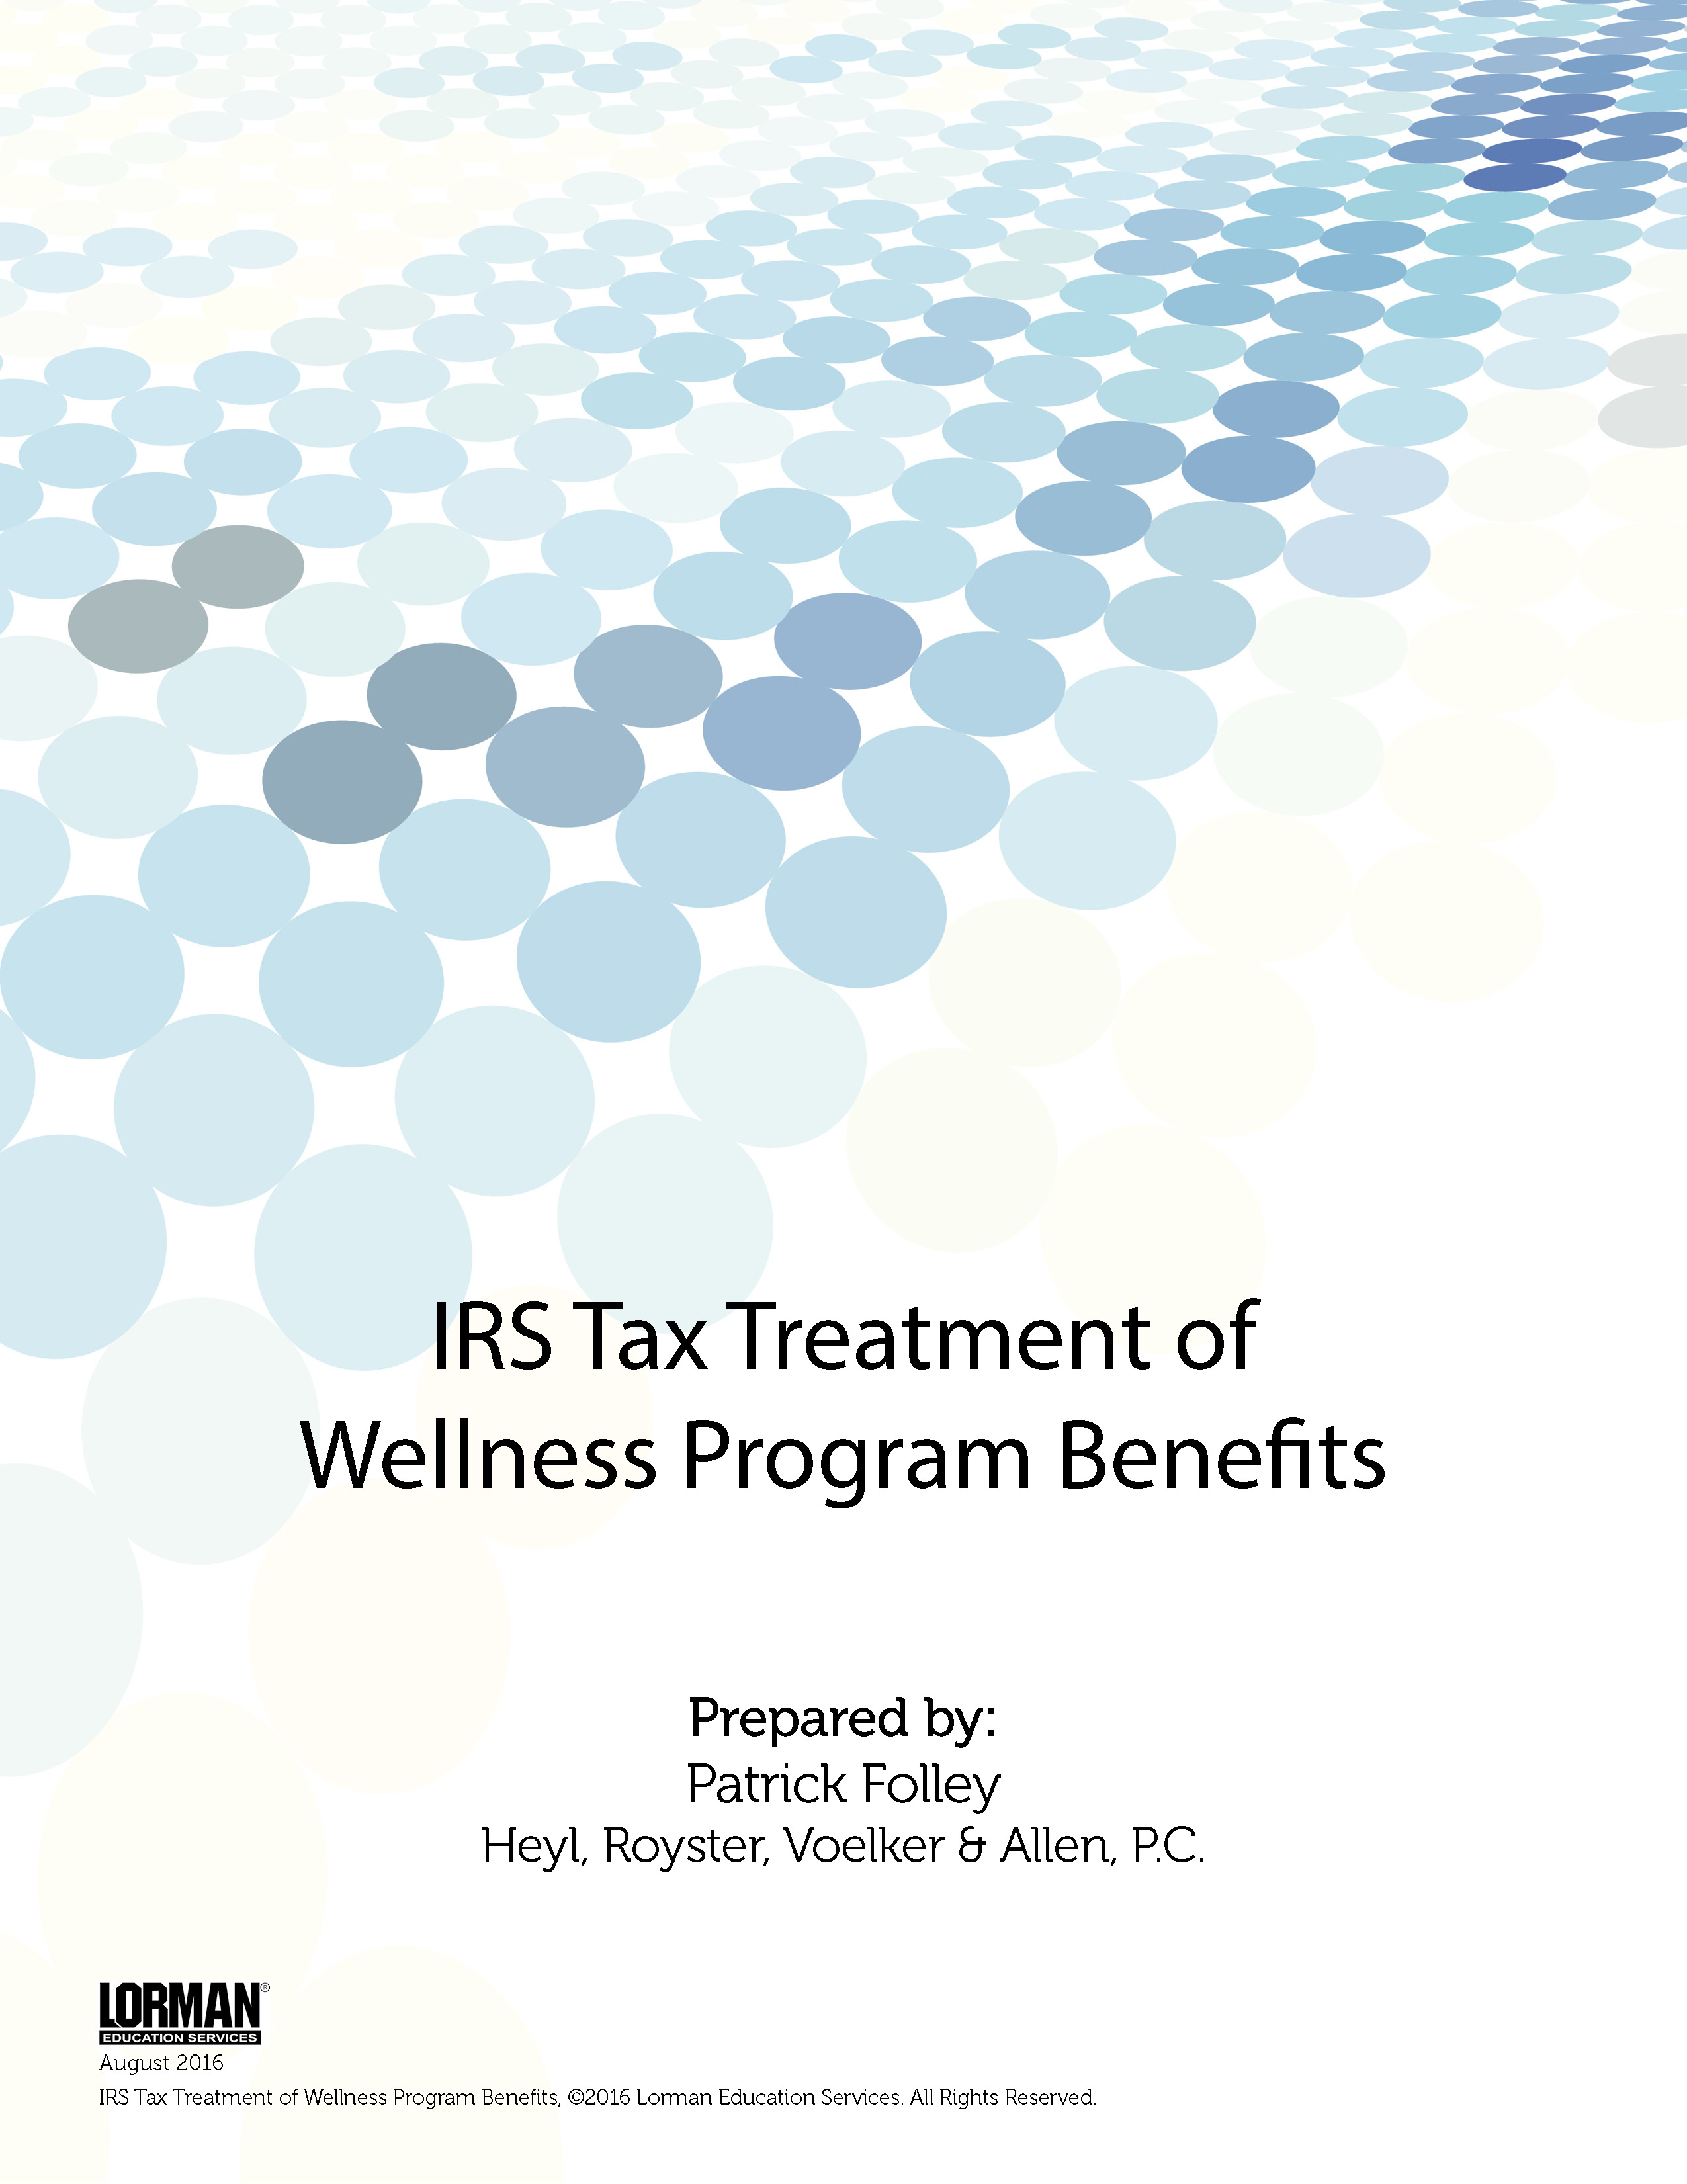 IRS Tax Treatment of Wellness Program Benefits